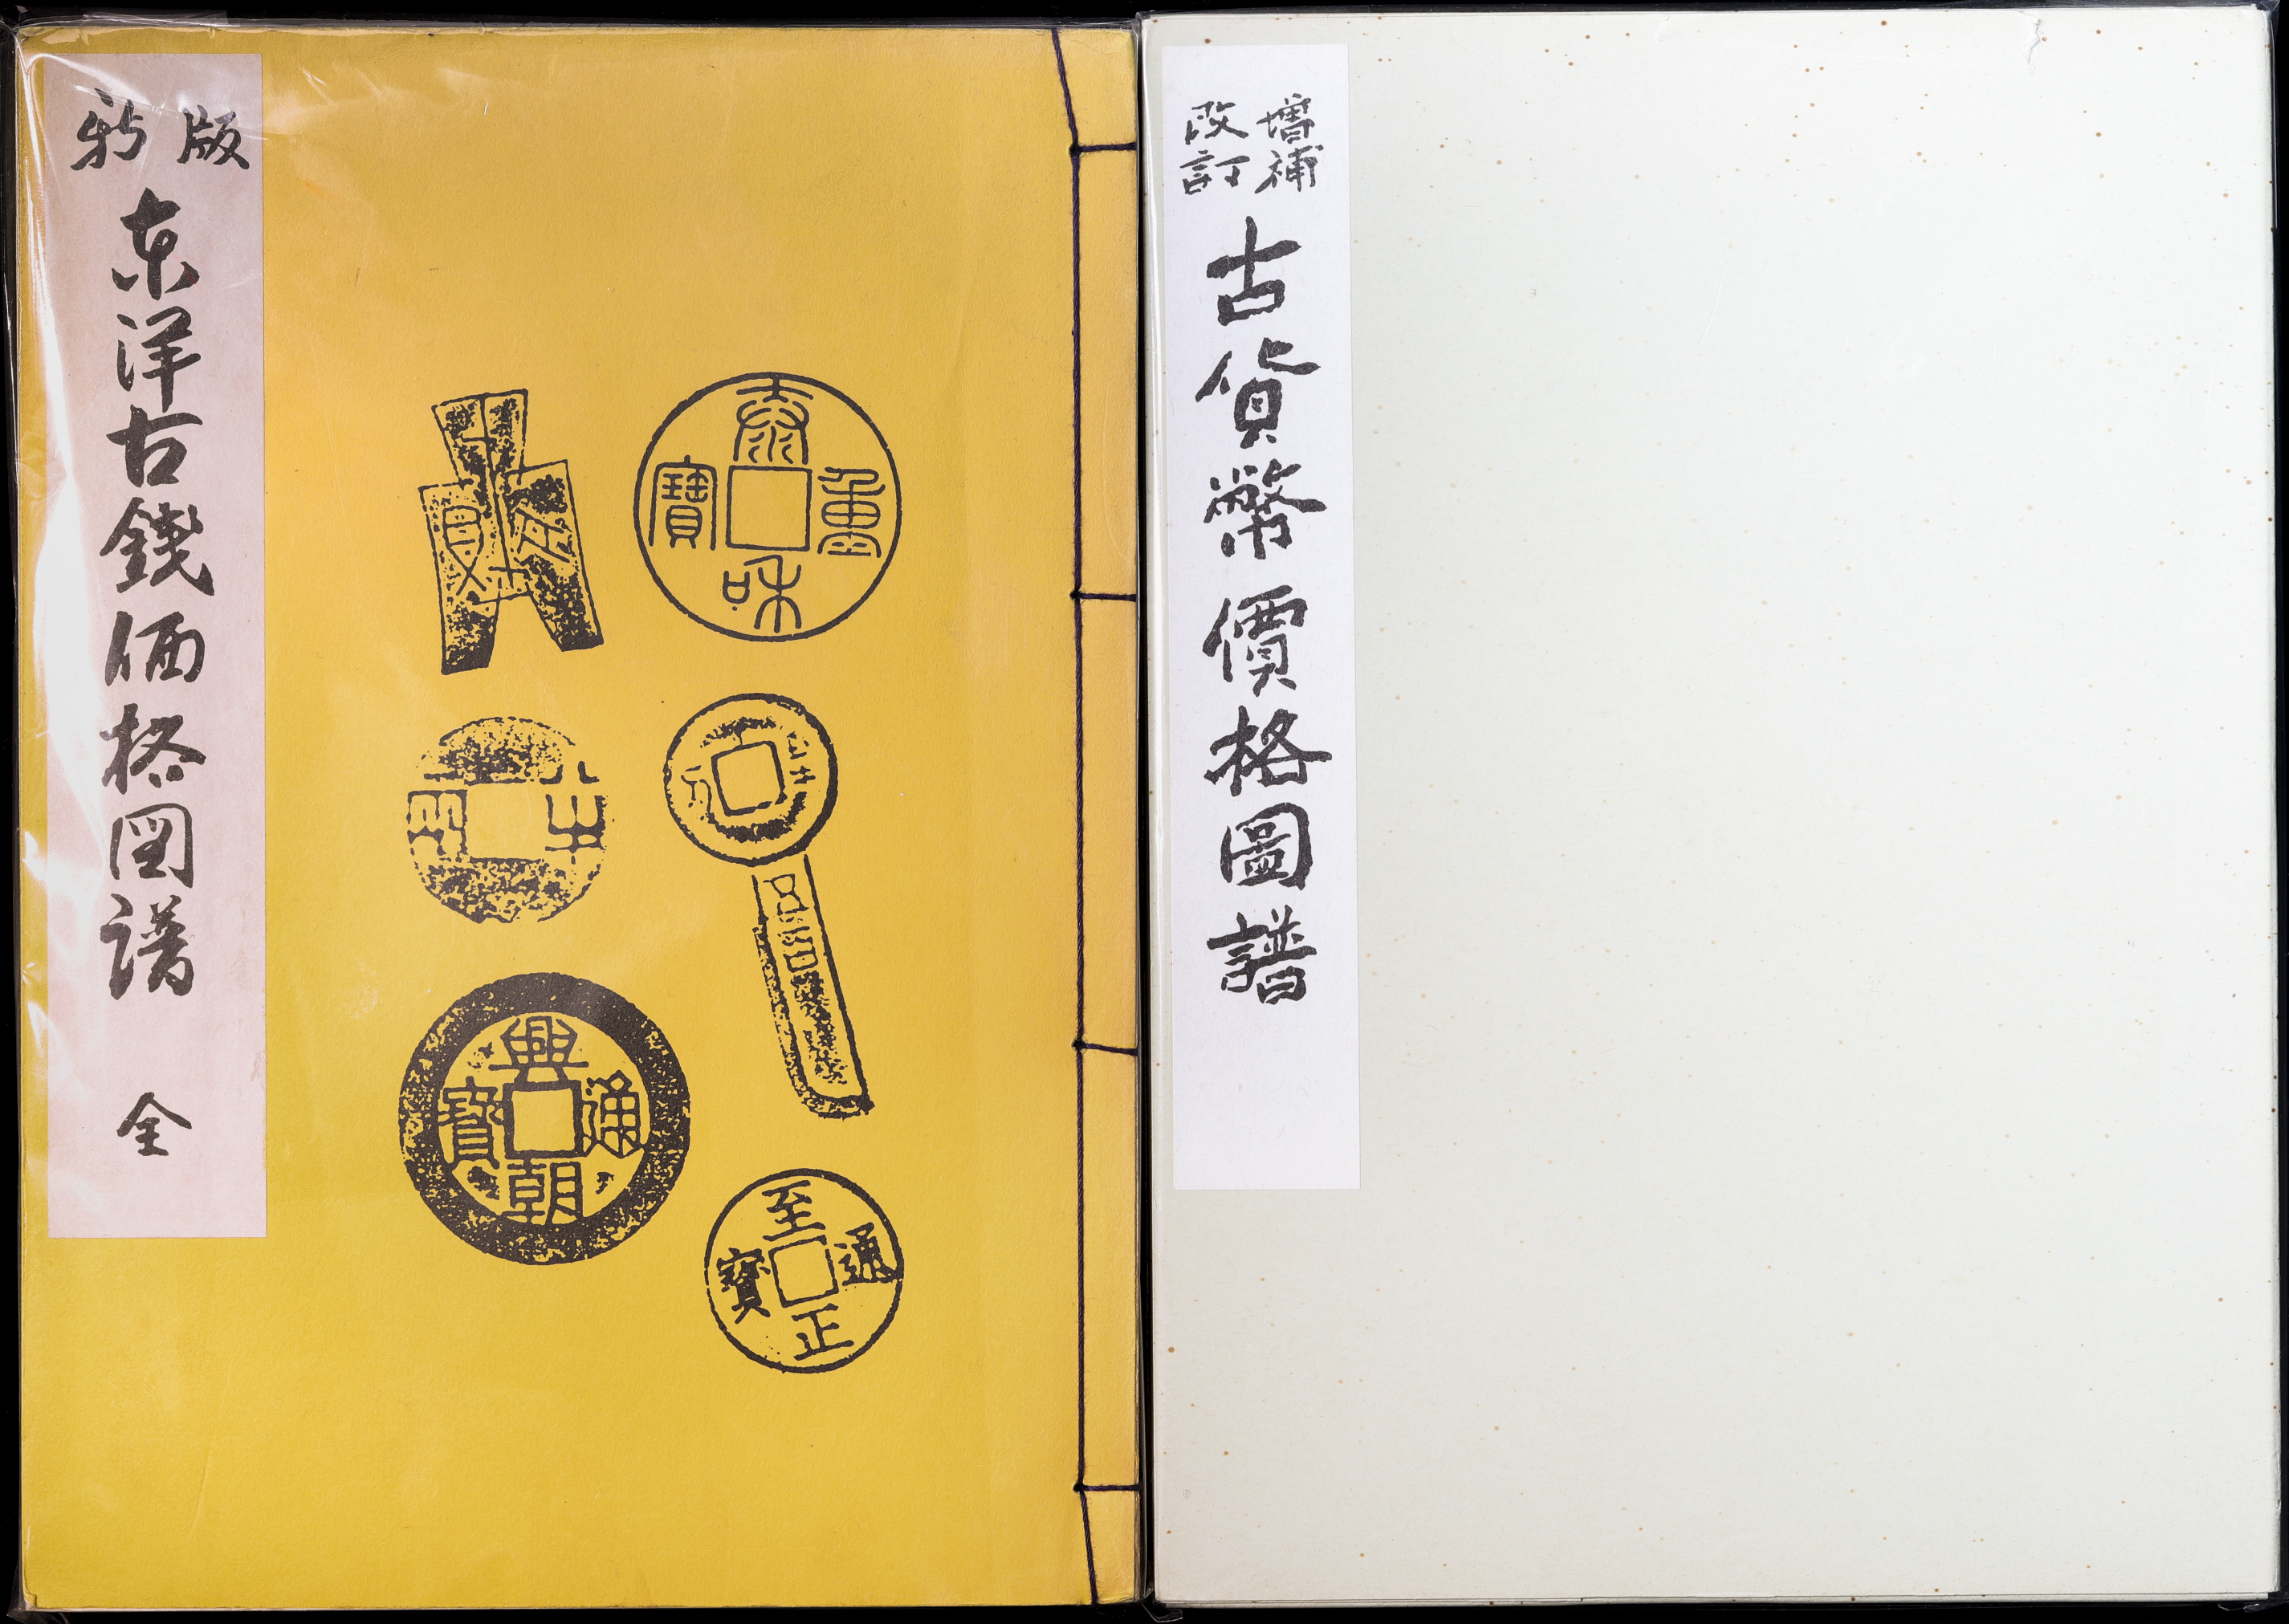 貨幣博物館 | Book 書籍 『新版 東洋古銭価格図譜 全』『改訂 増補 古 